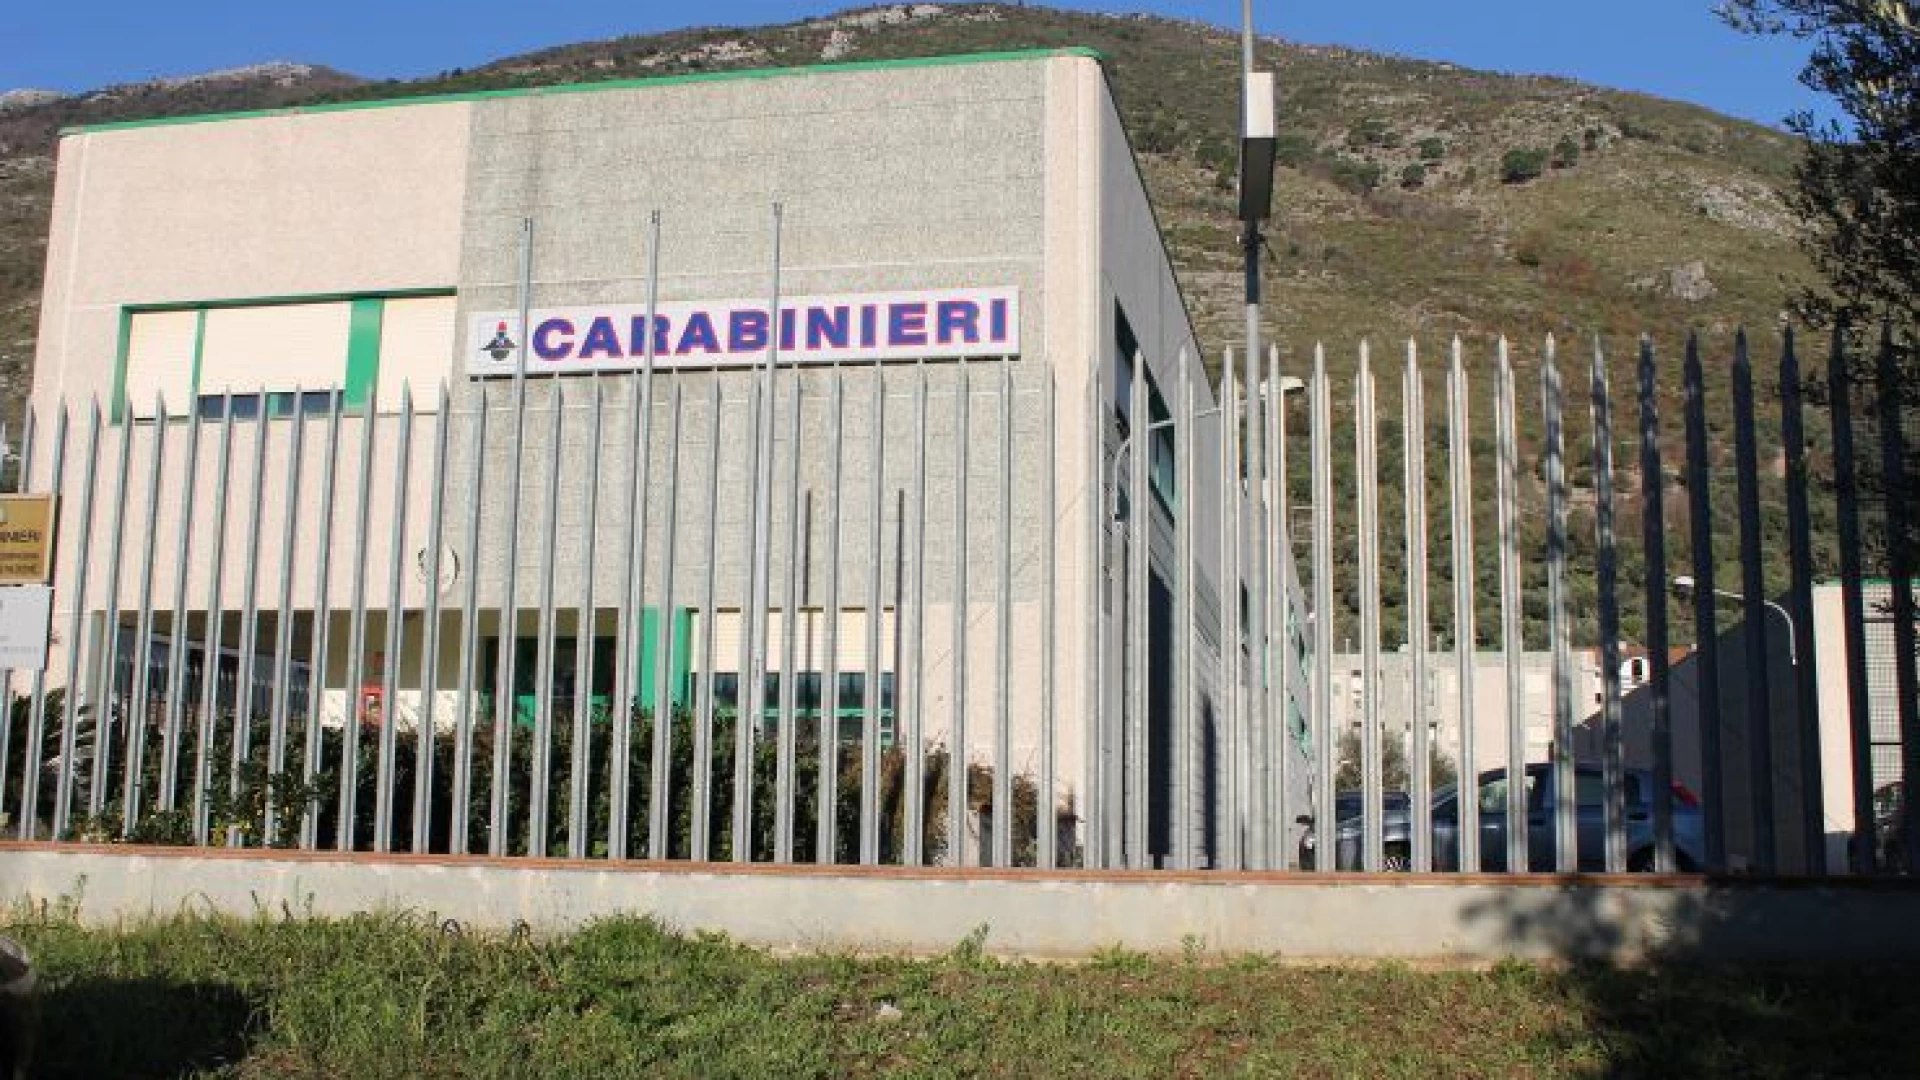 Venafro : I Carabinieri arrestano un uomo per atti persecutori e maltrattamenti in famiglia.